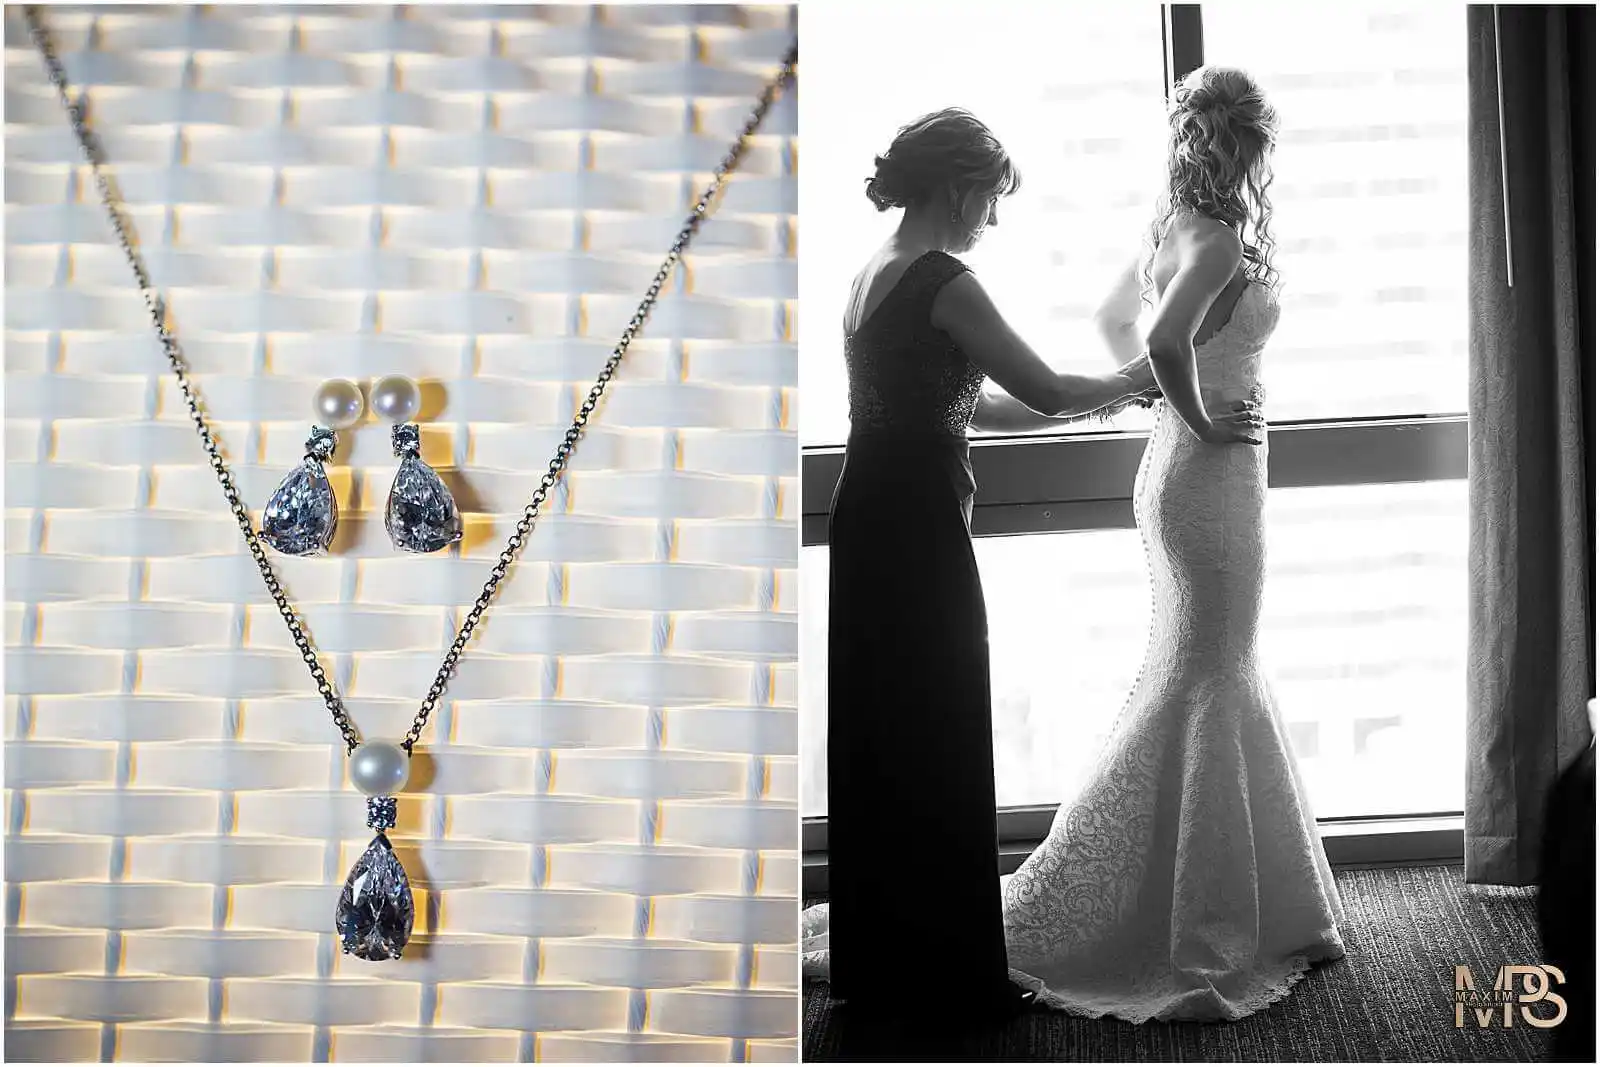 Elegant bridal jewelry and bride preparation at Hyatt Regency Cincinnati wedding.